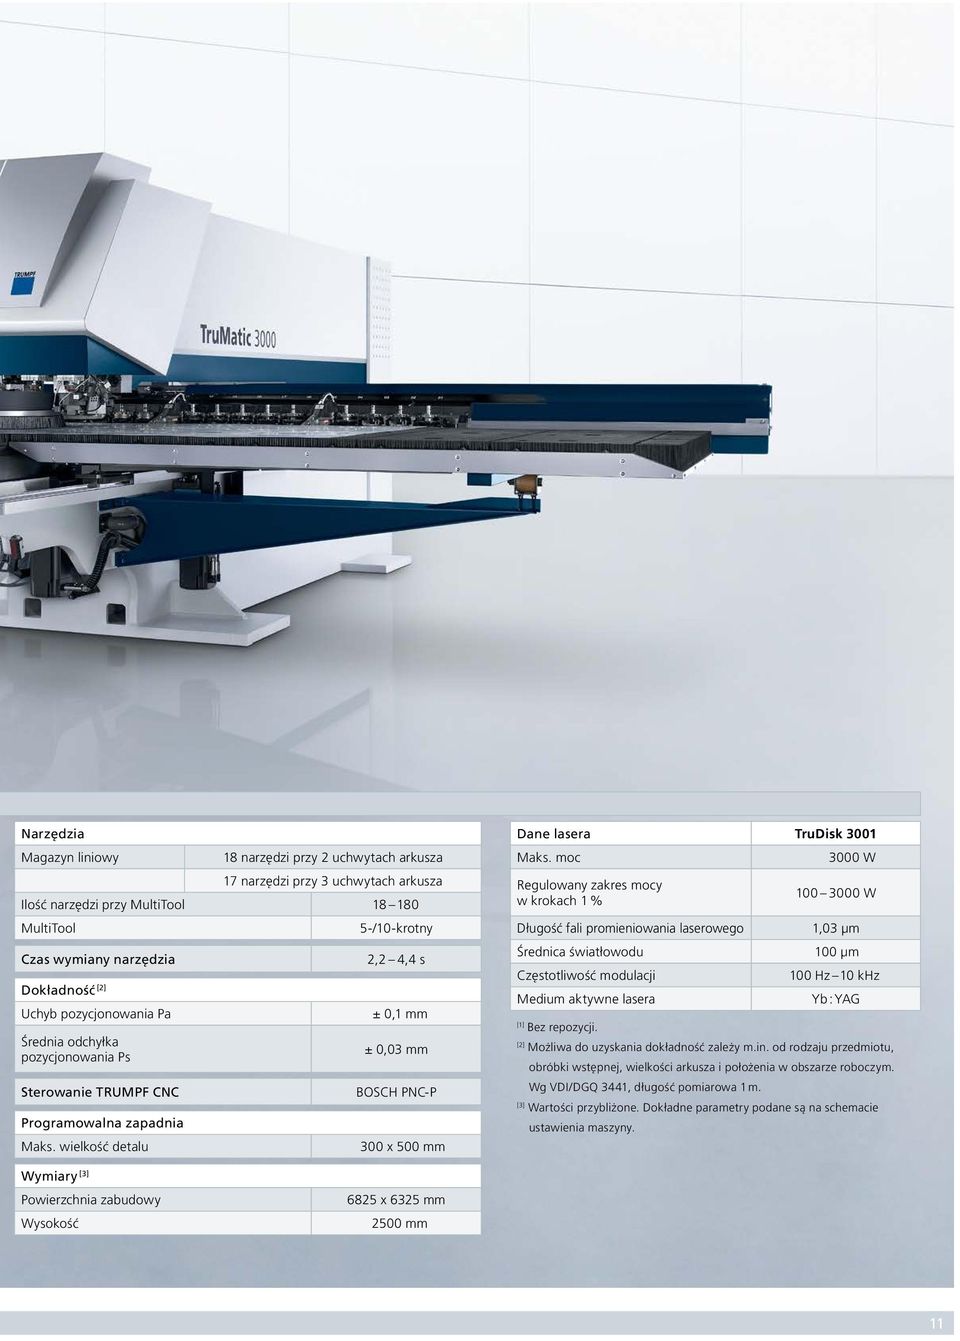 wielkość detalu 300 x 500 mm Dane lasera TruDisk 3001 Maks.